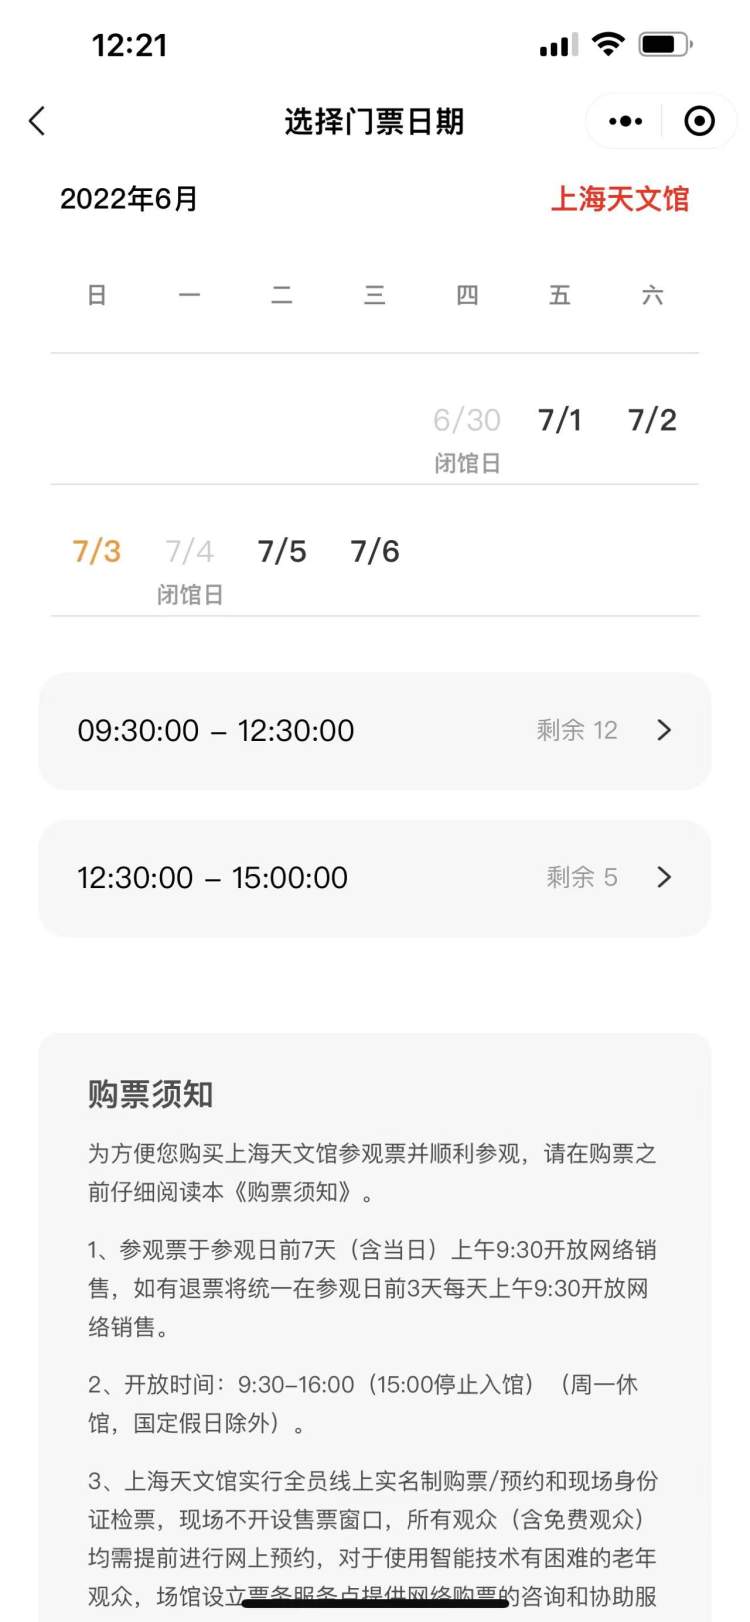 购票通道已开！上海天文馆周末票20分钟抢光，上海科技馆和自博馆余票充足…